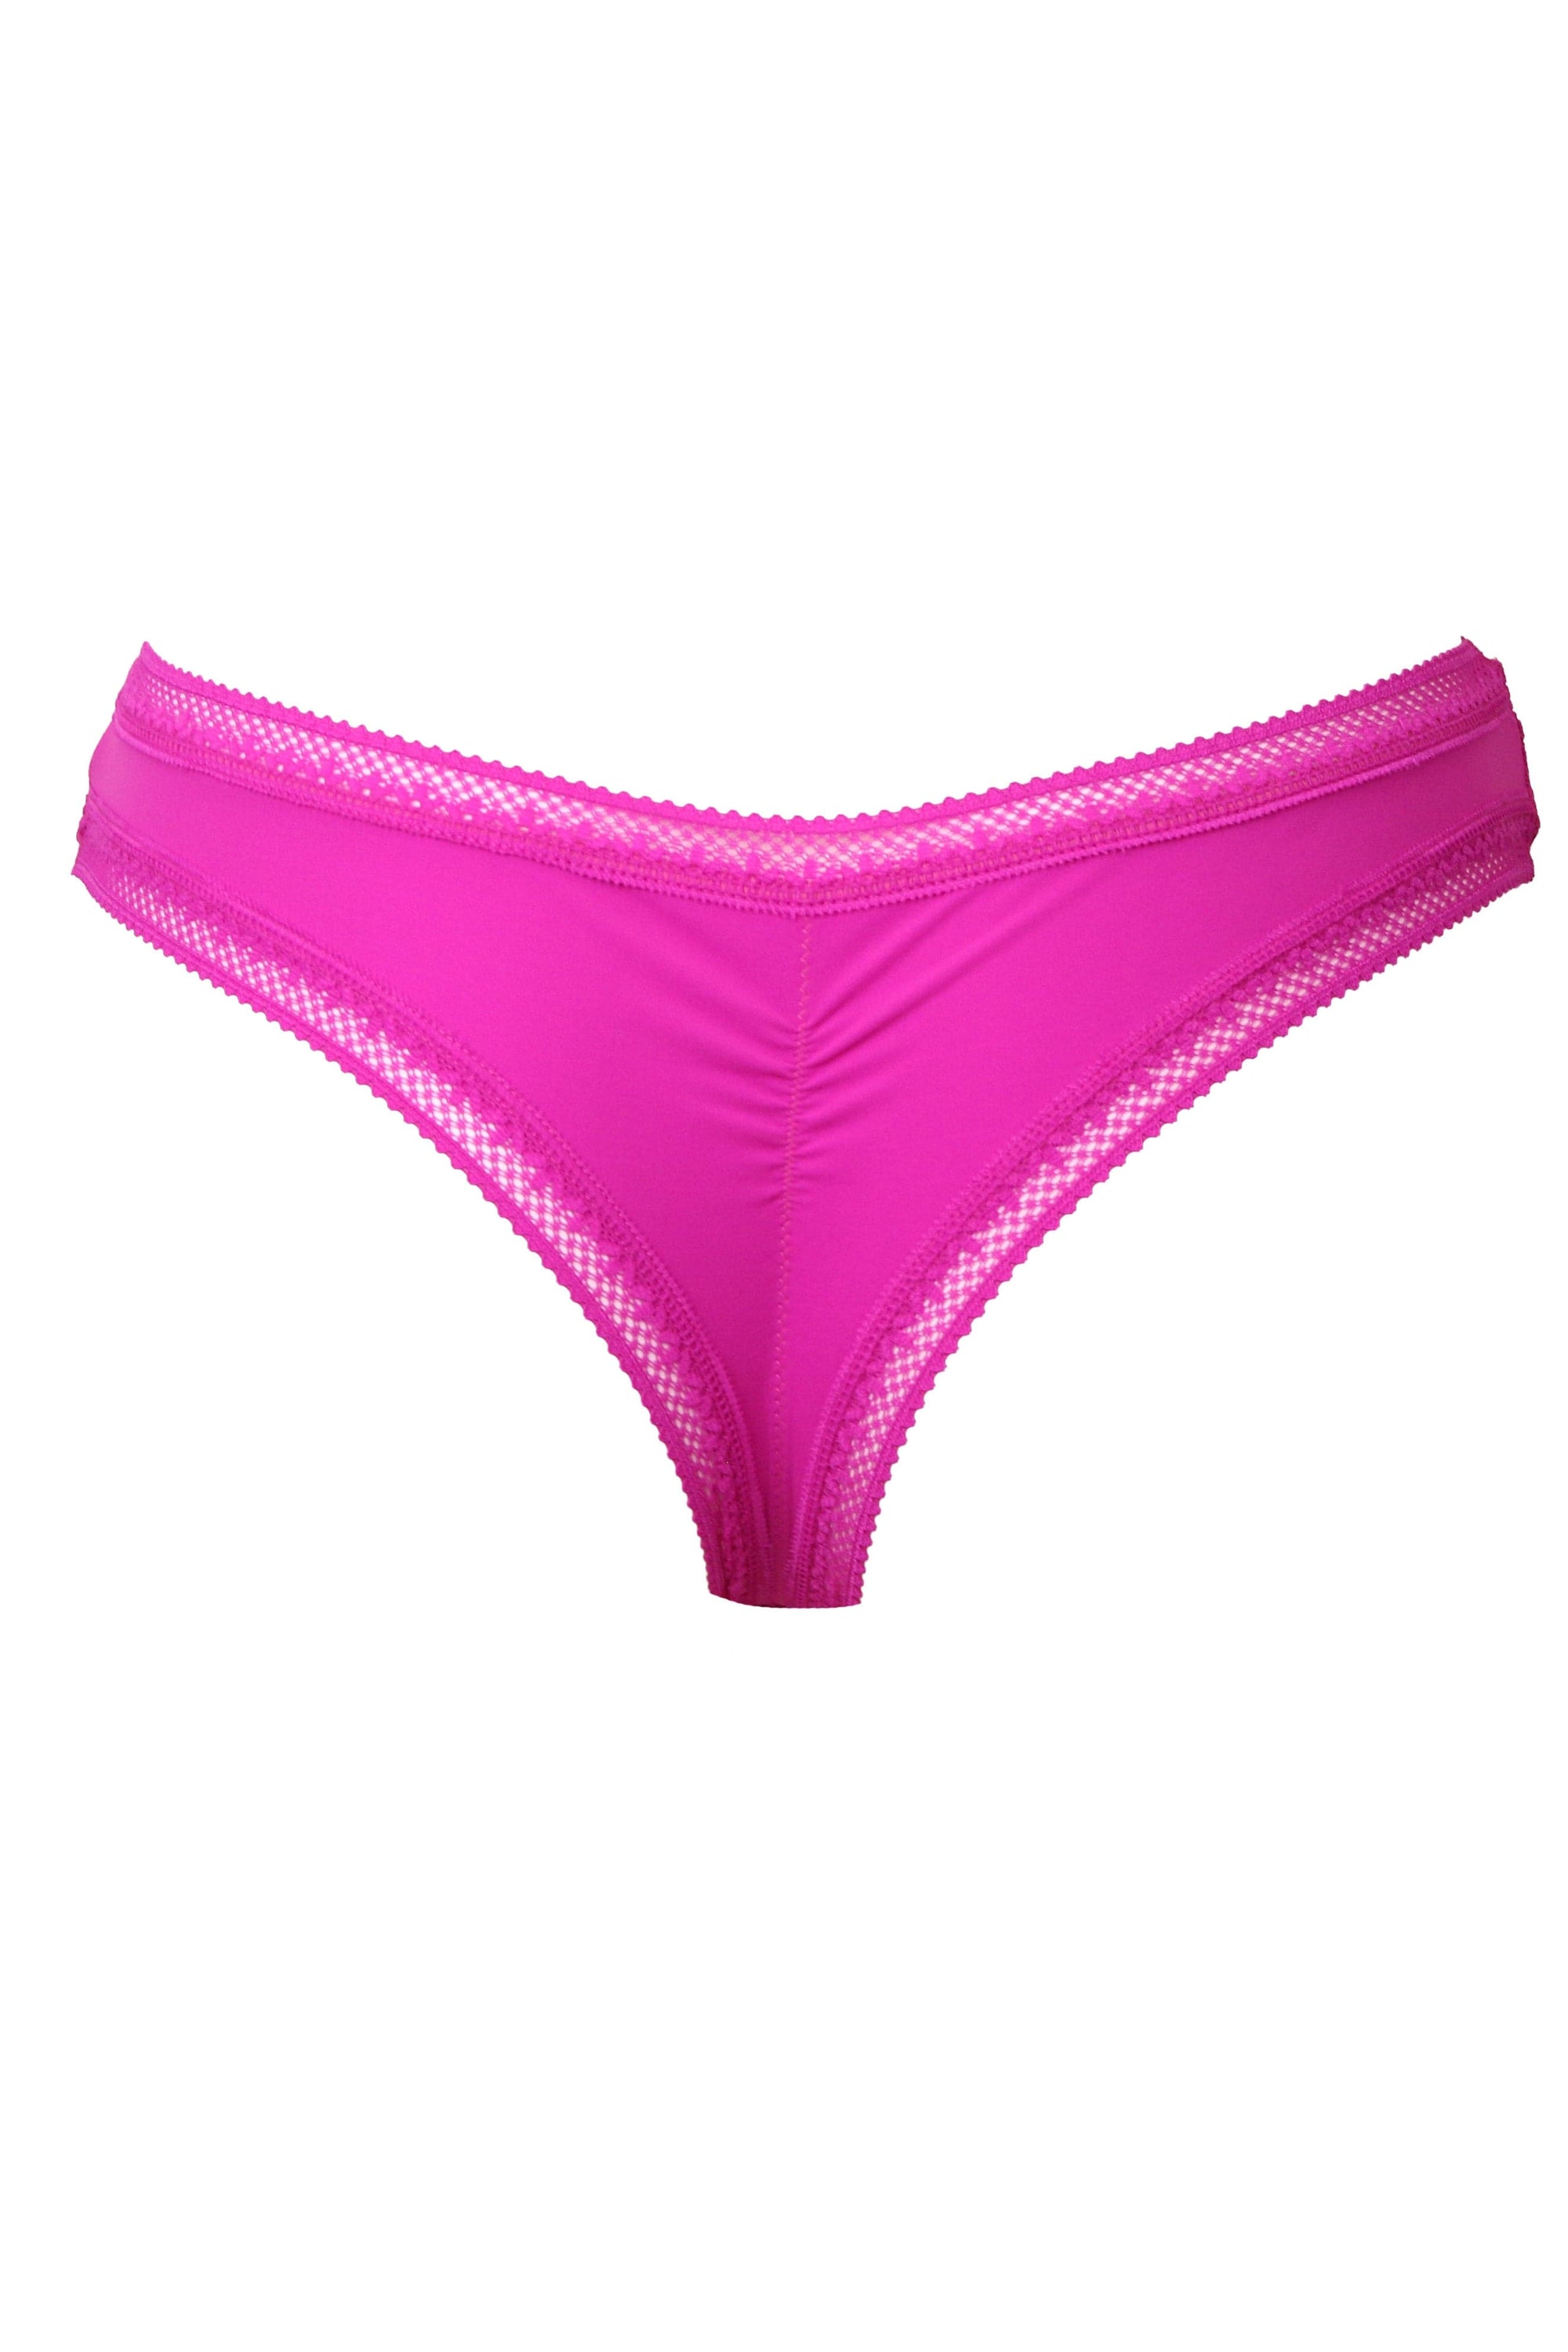 Amour Secret Women's Mid Rise Lace Boyshort Panty P648 – Amour Trends